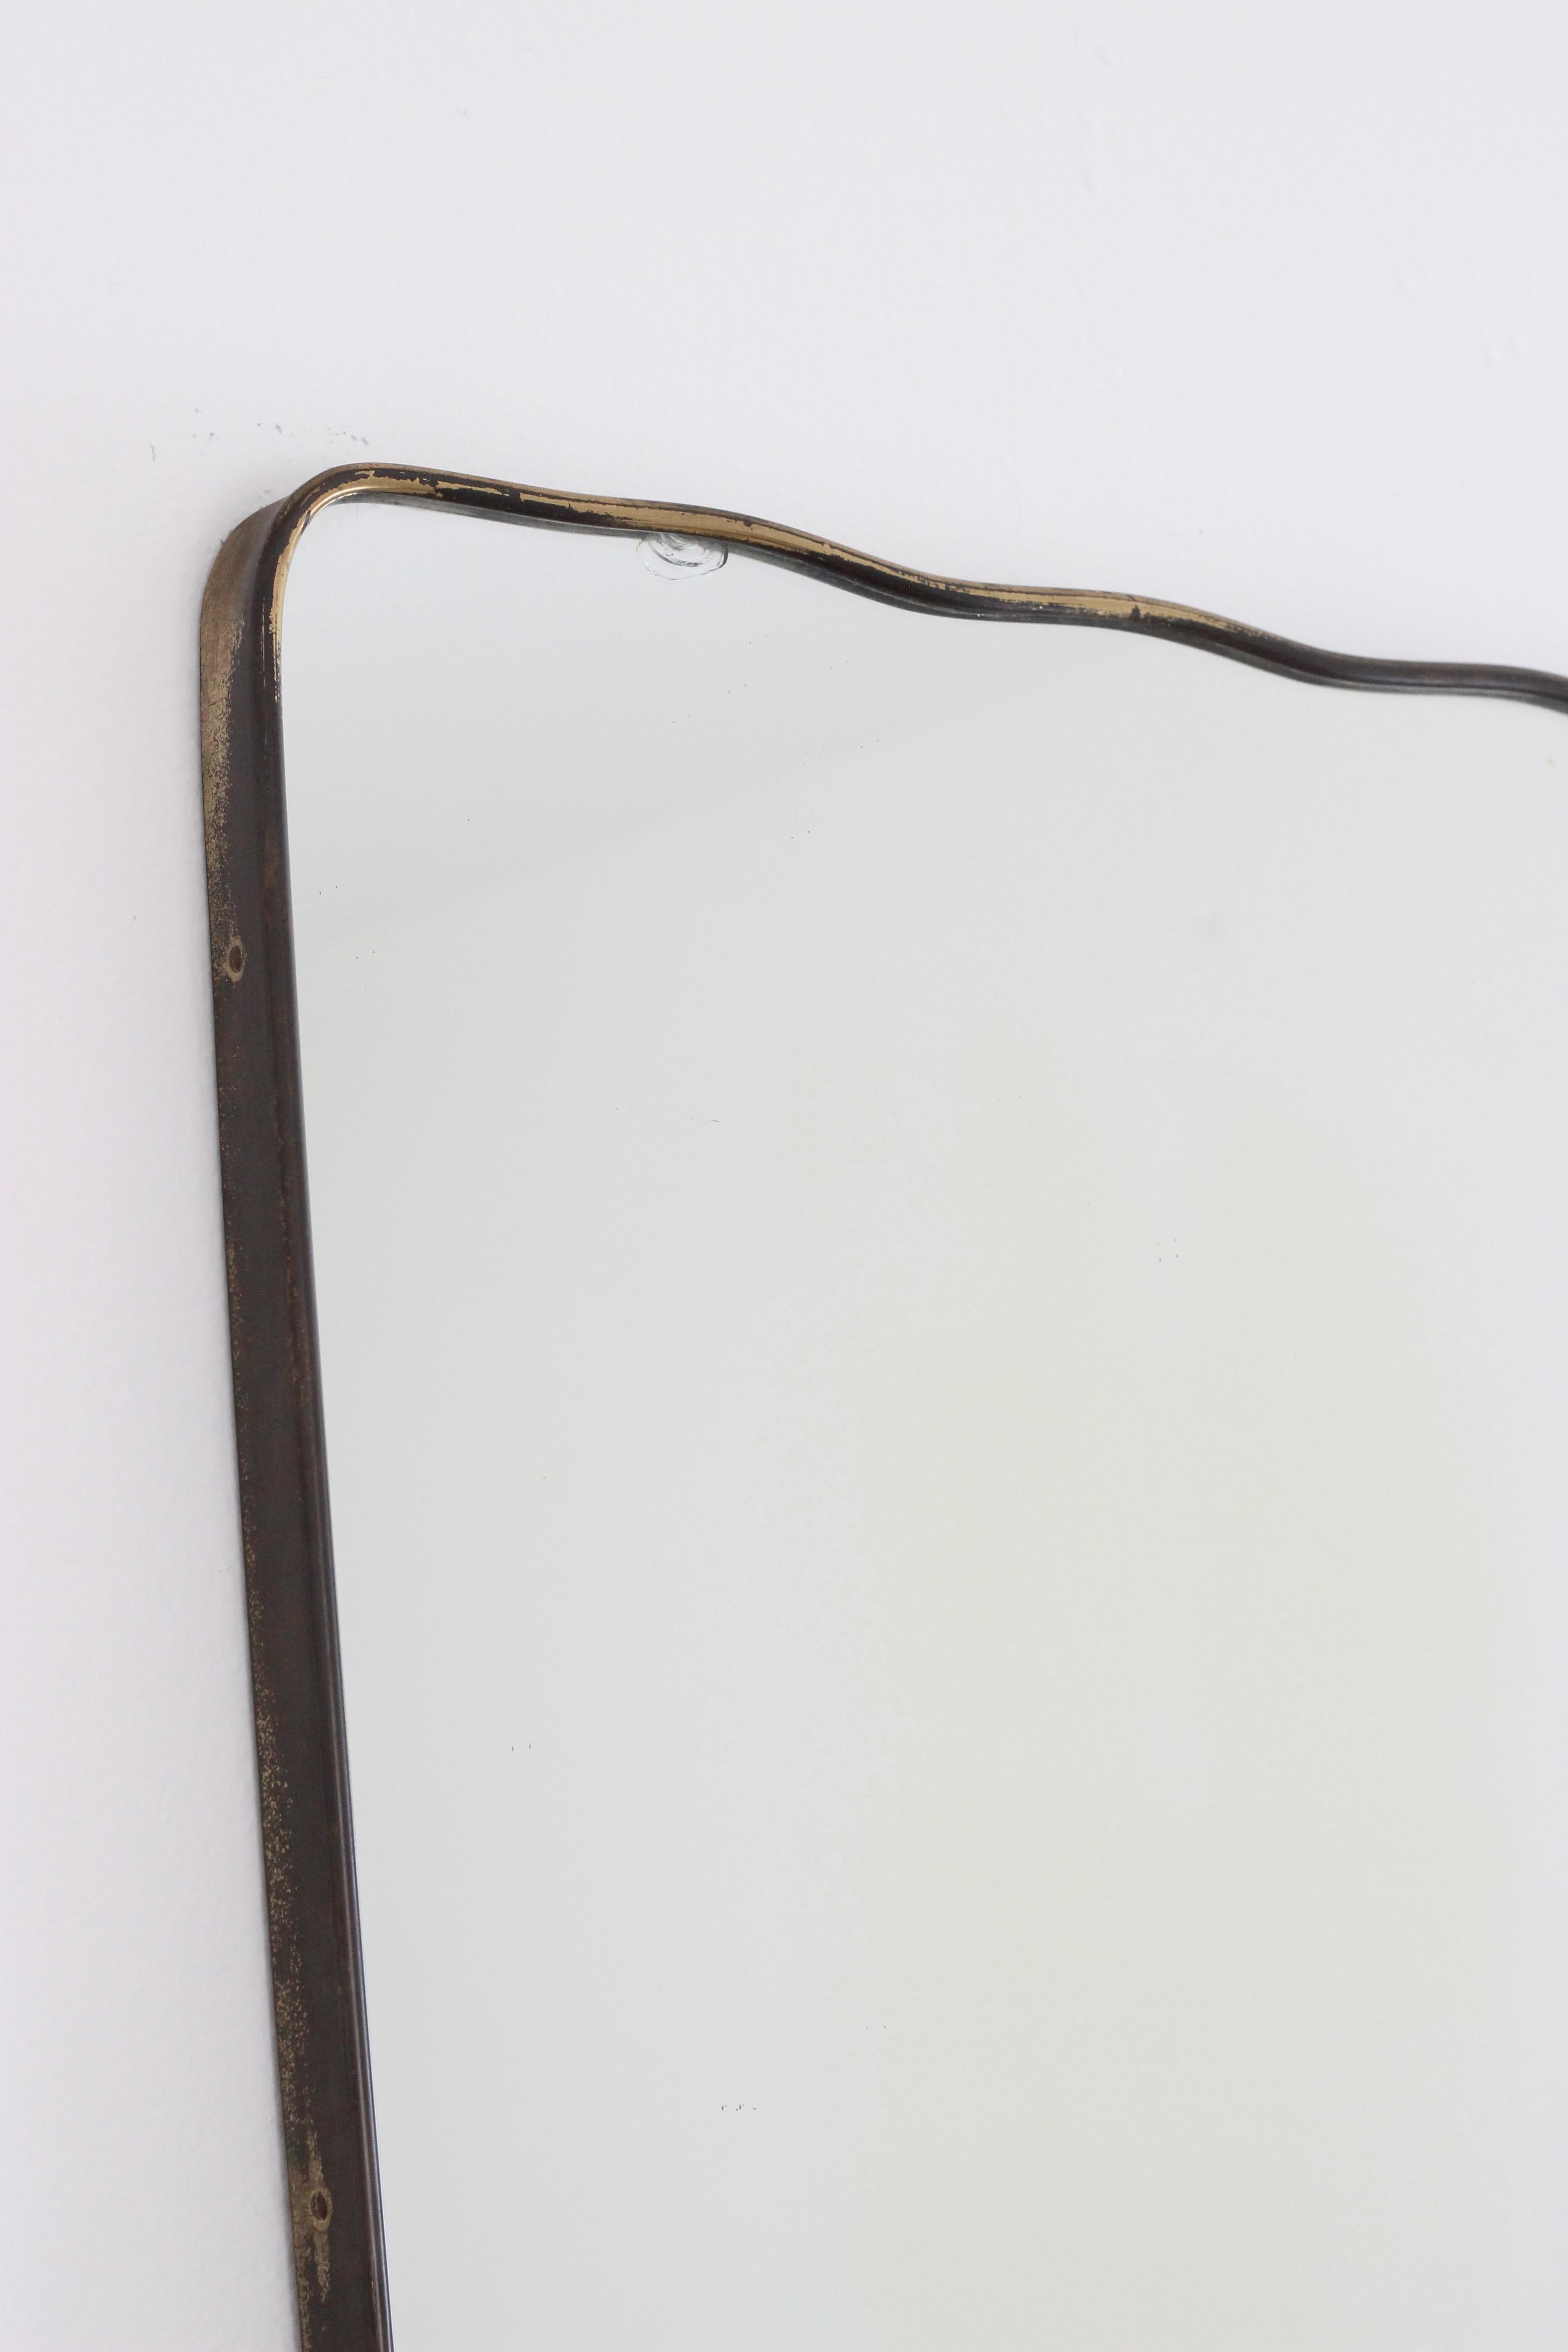 Vintage Italian Brass Mirror by Gio Ponti, Italy, 1950s Organic Wall Mirror Rare 1